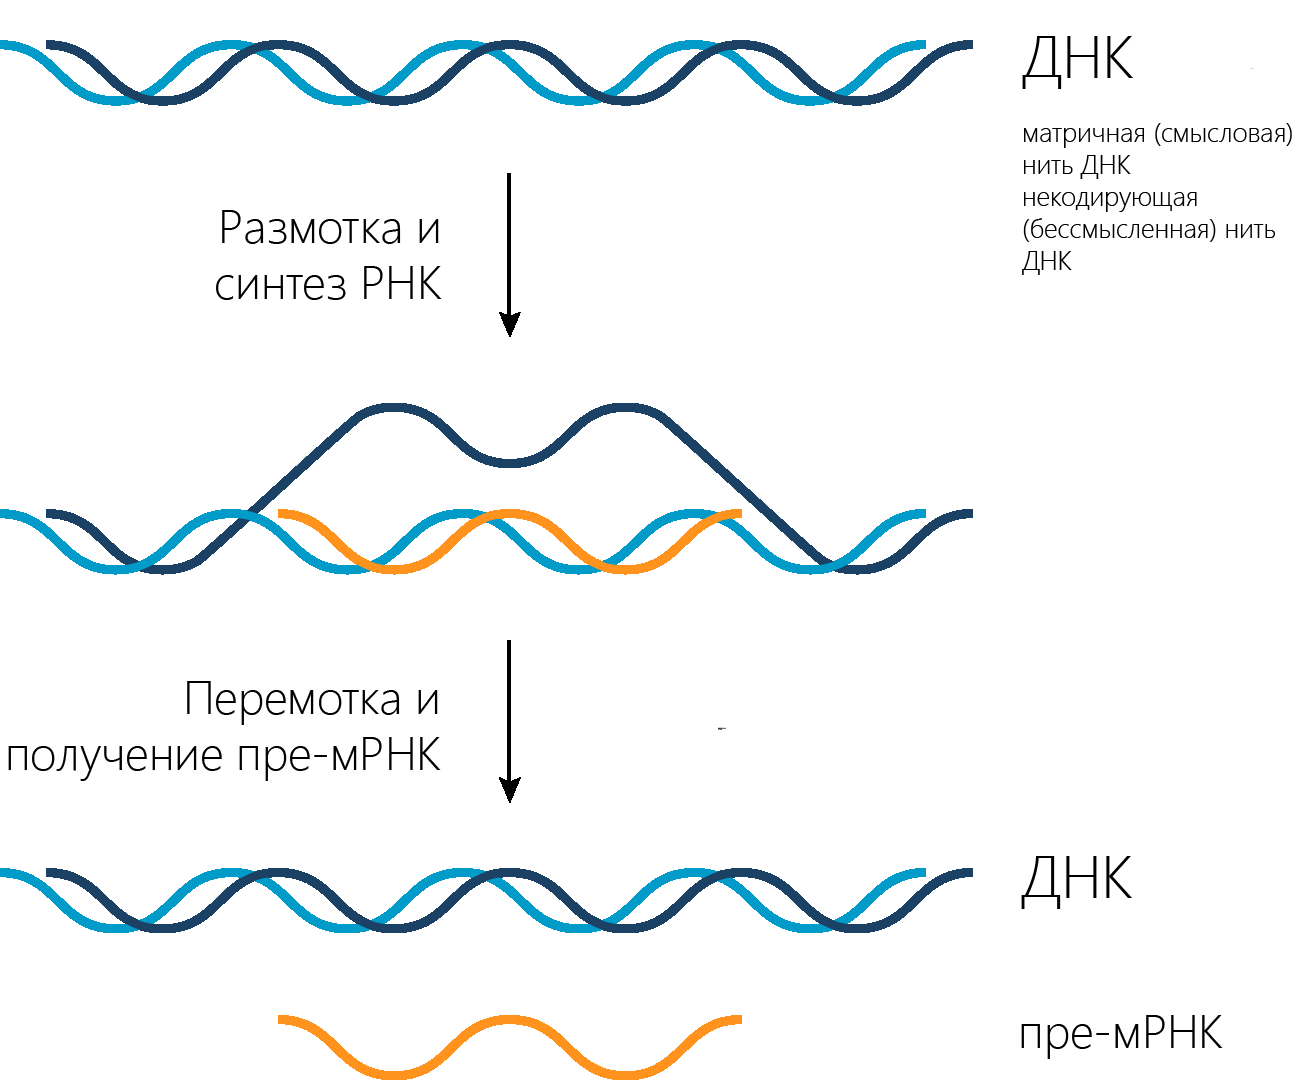 синтез комплементарной нити РНК на молекуле ДНК